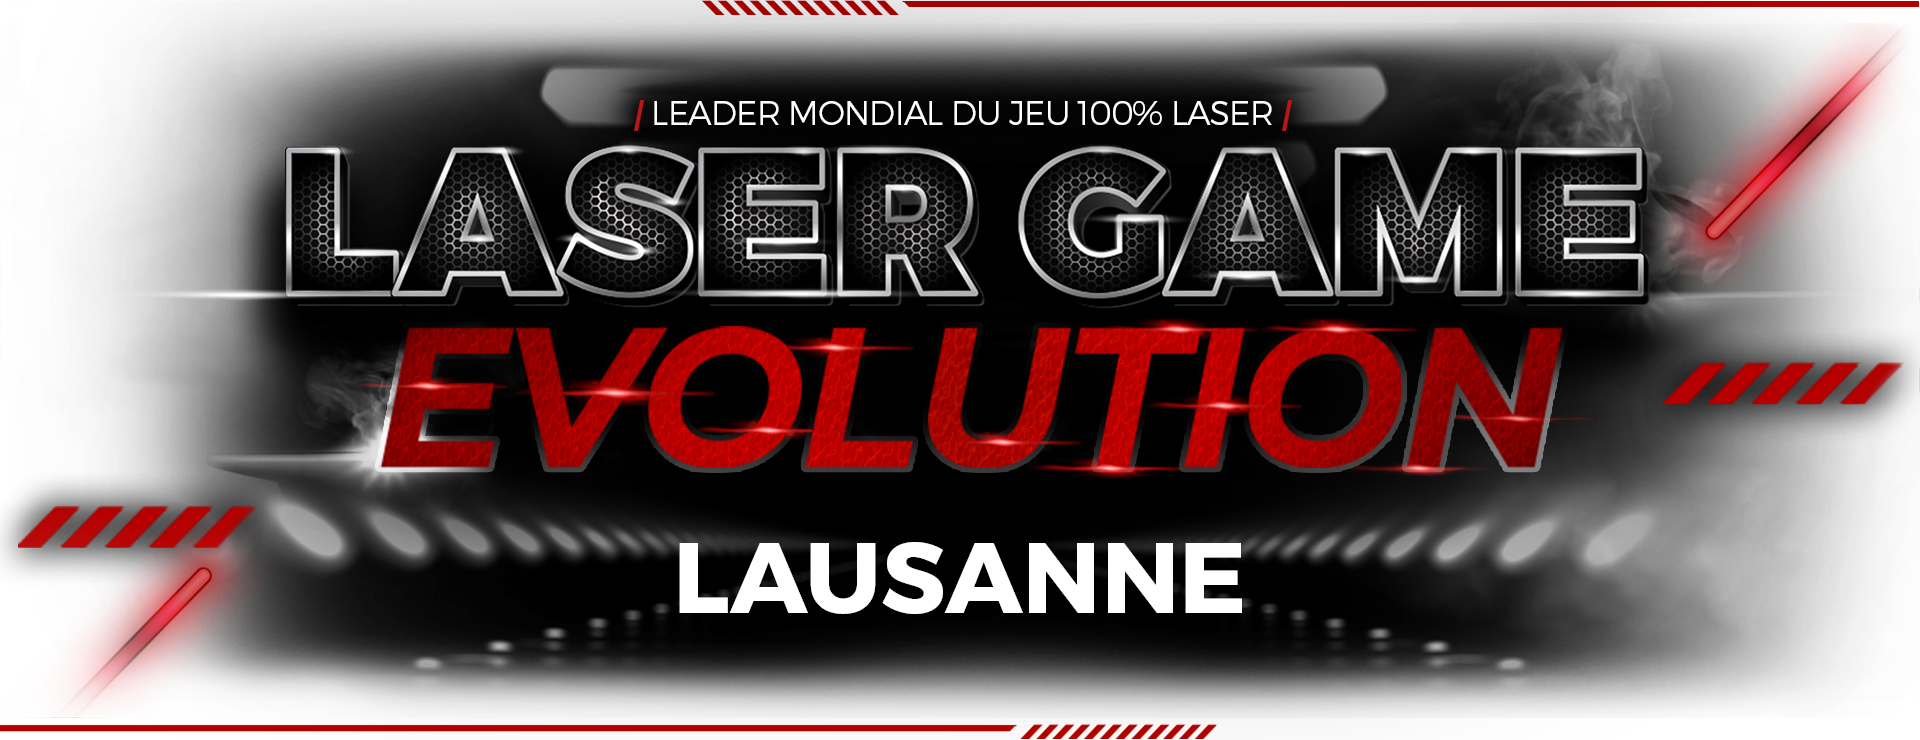 Laser Game Genève